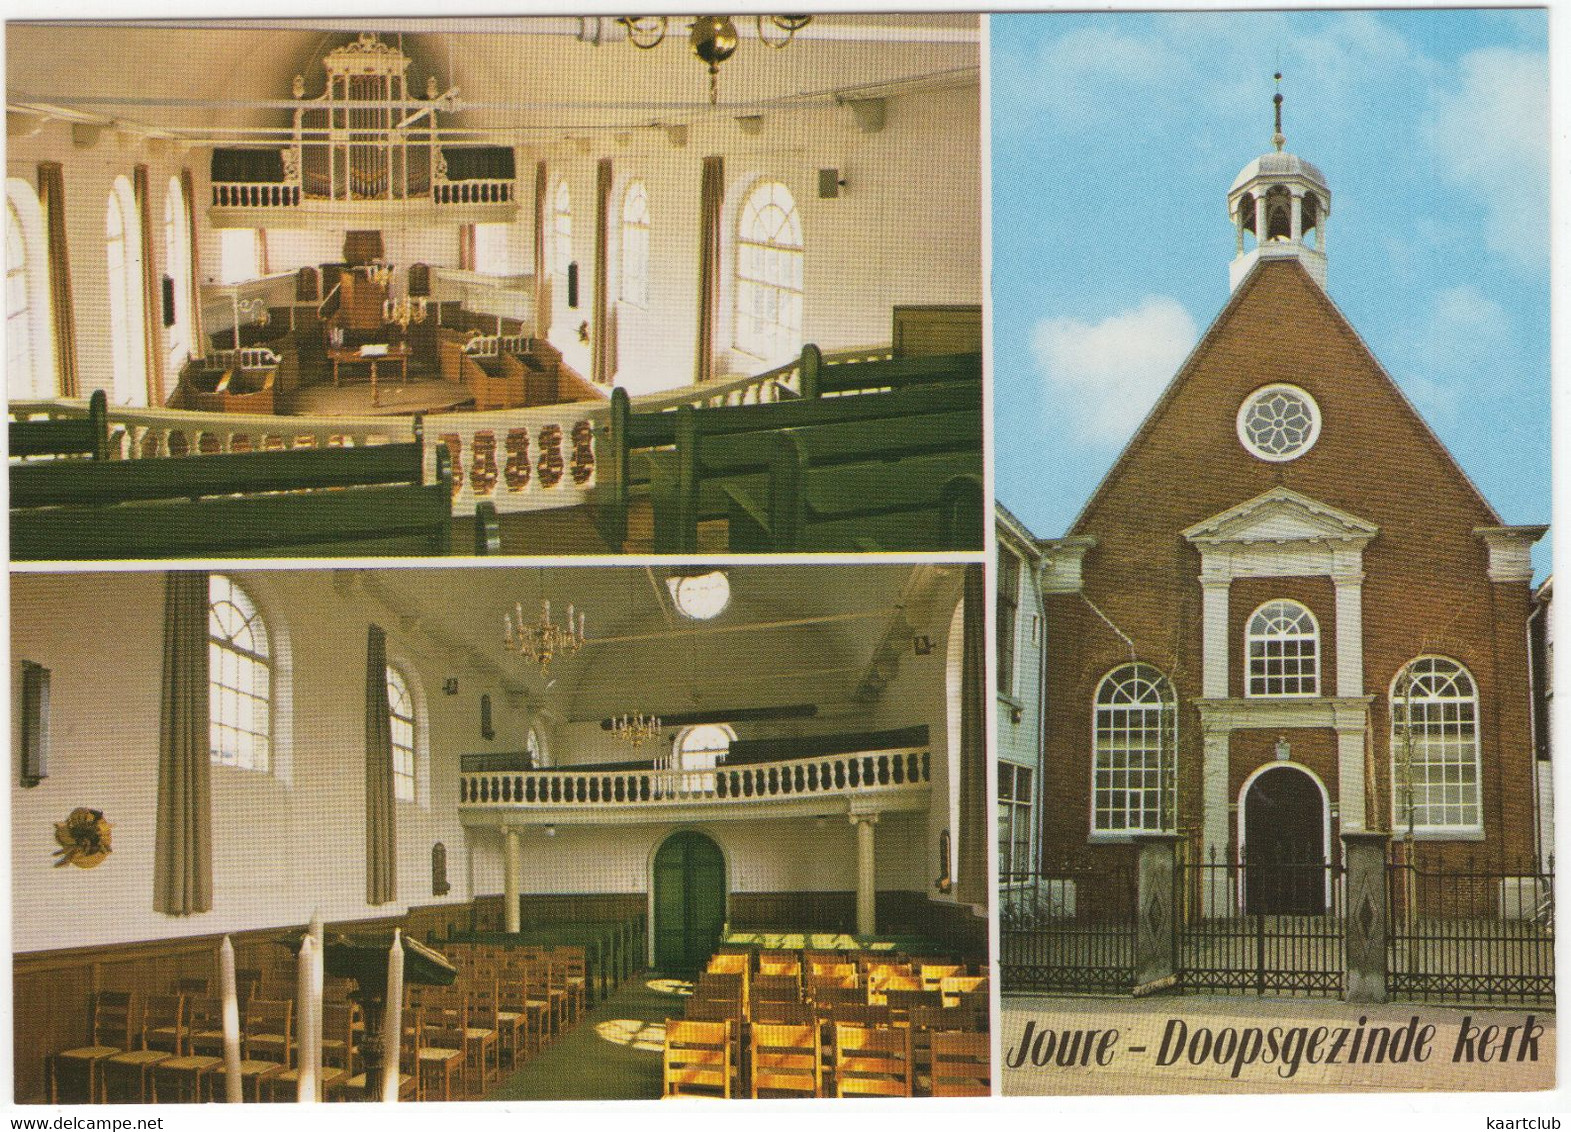 Joure - Doopsgezinde Kerk : Van Dam Orgel (1824) - (Friesland, Holland) - ORGEL / ORGUE / ORGAN - Joure